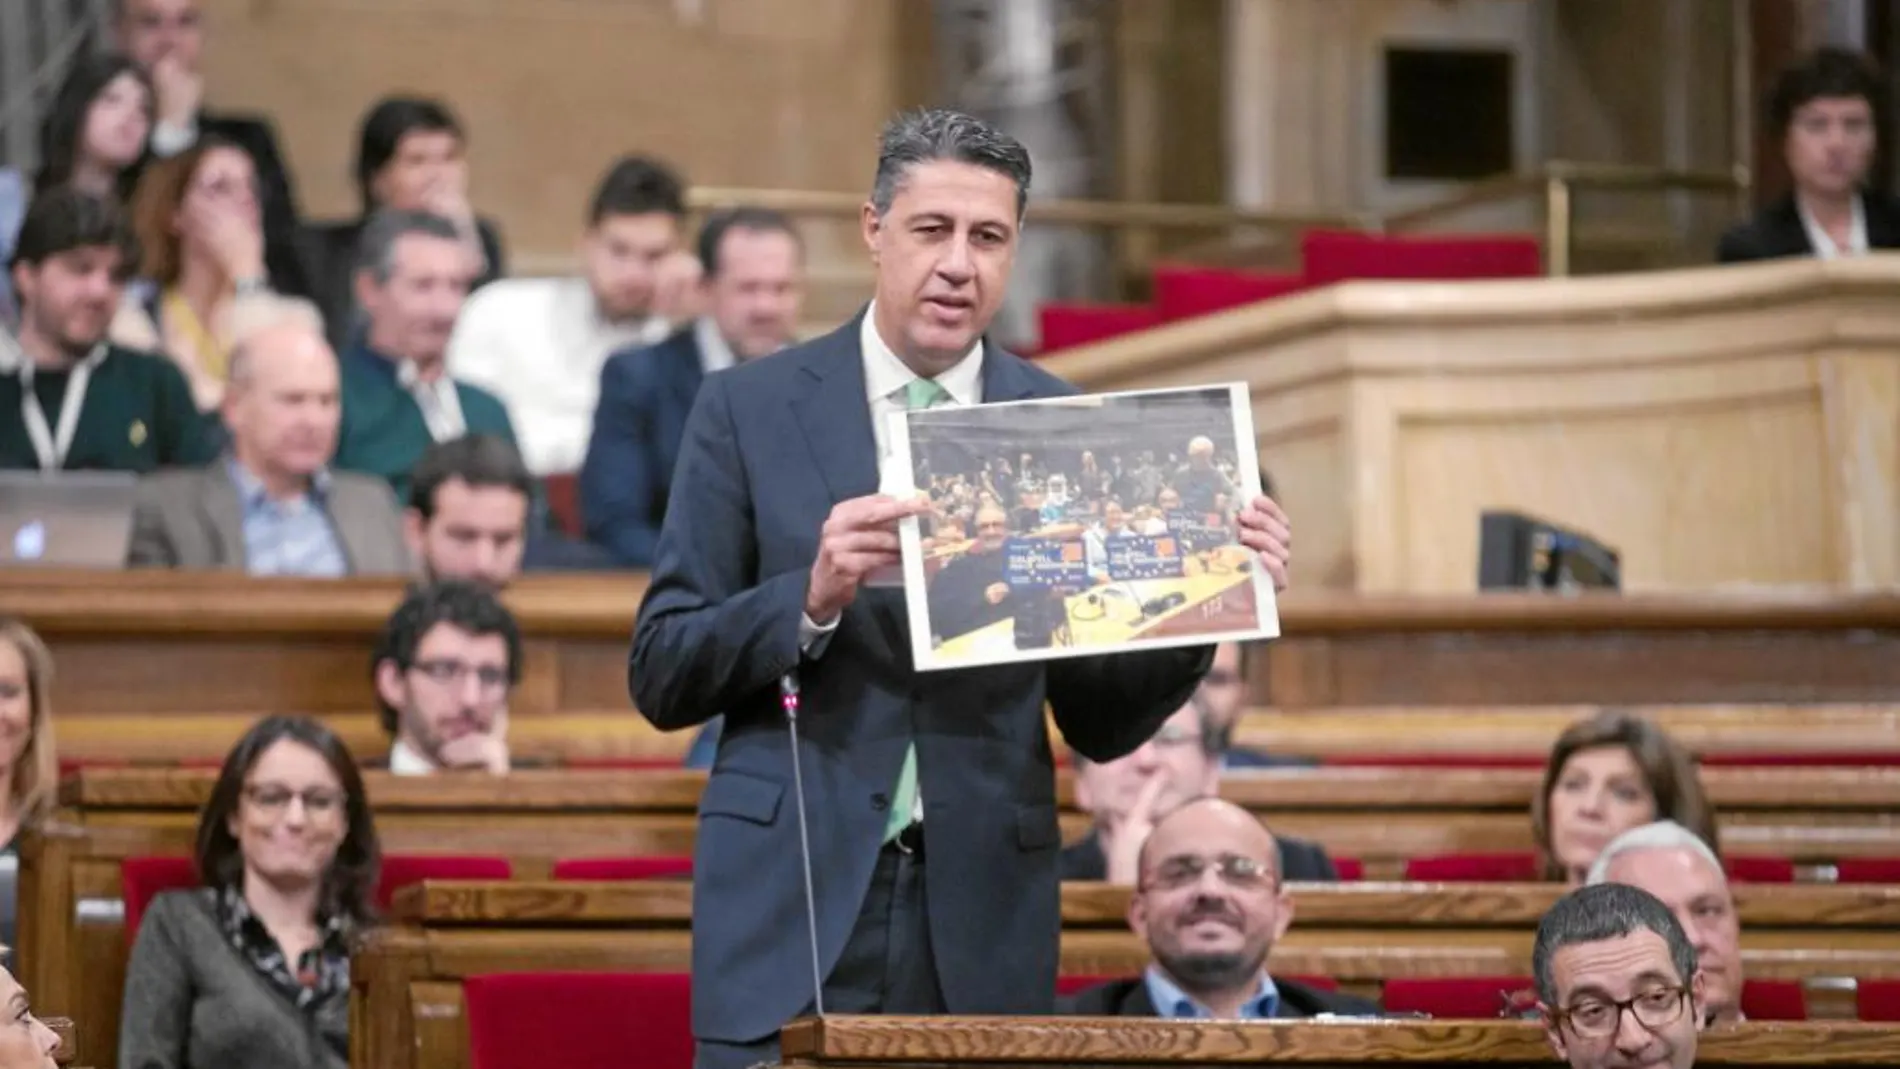 García Albiol, ayer en el Parlament,mostrando una fotografía del acto del Govern en una sala del Europarlamento con simpatizantes independentistas.